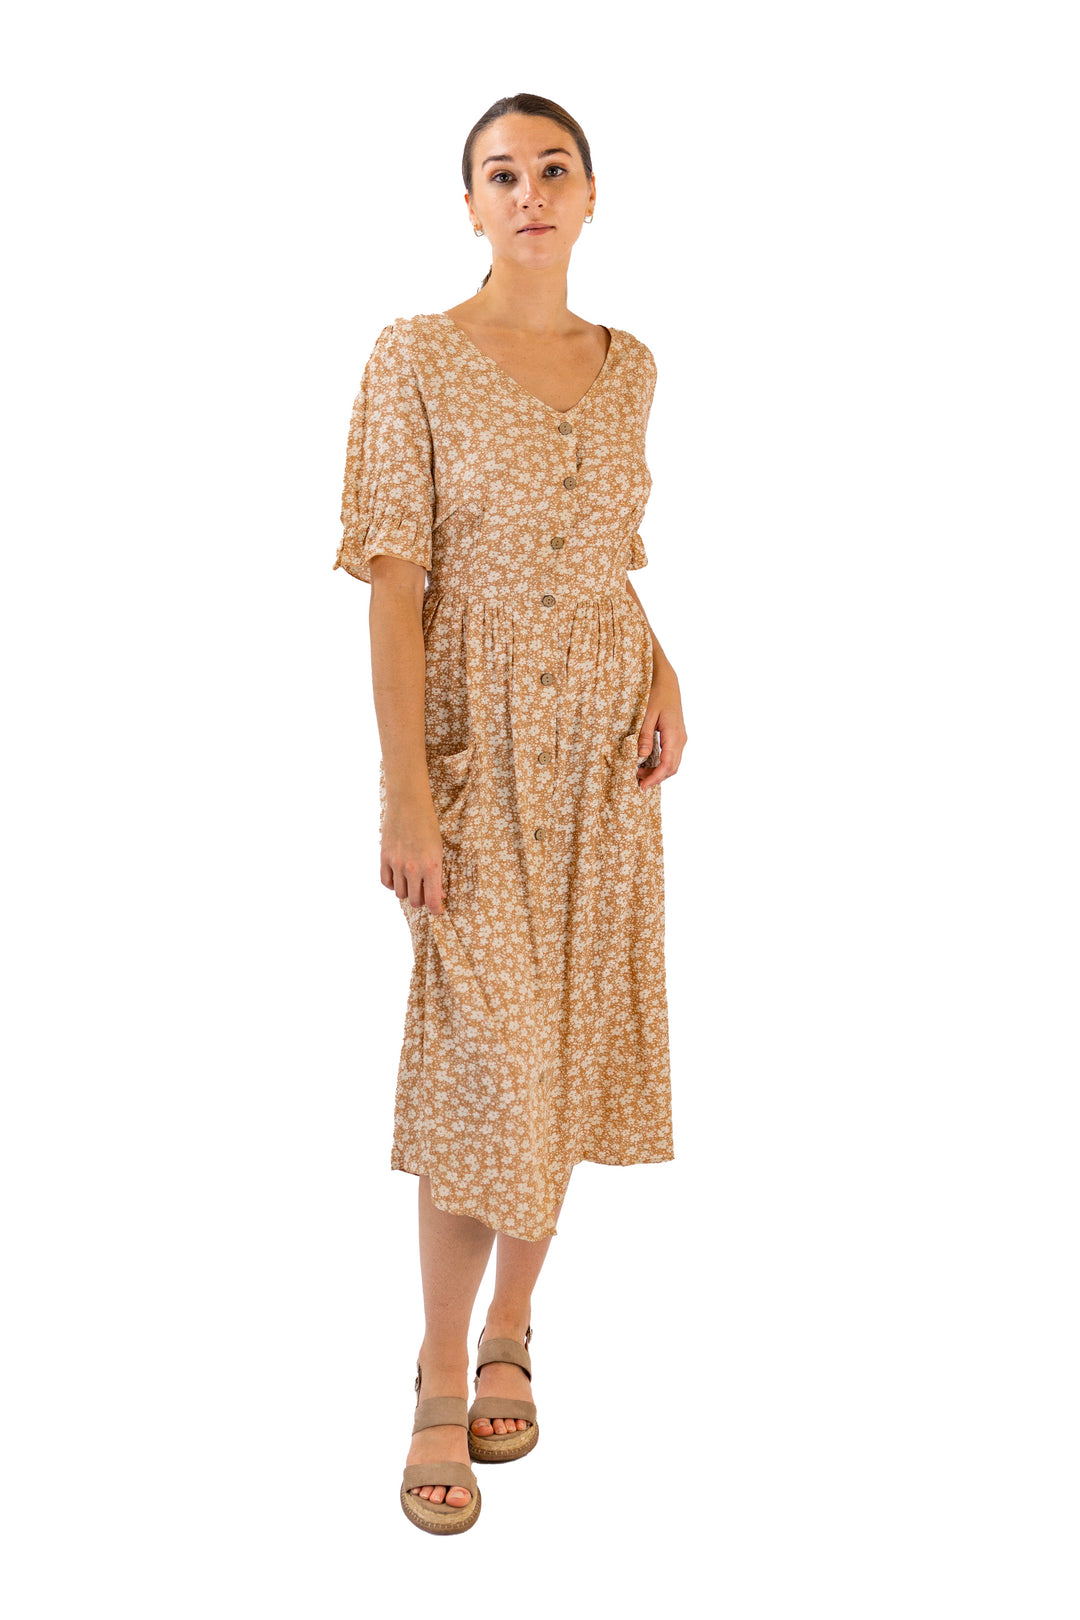 Fabonics Beige Floral Midi Dress with Side Slit and Pocket in Elegant Design